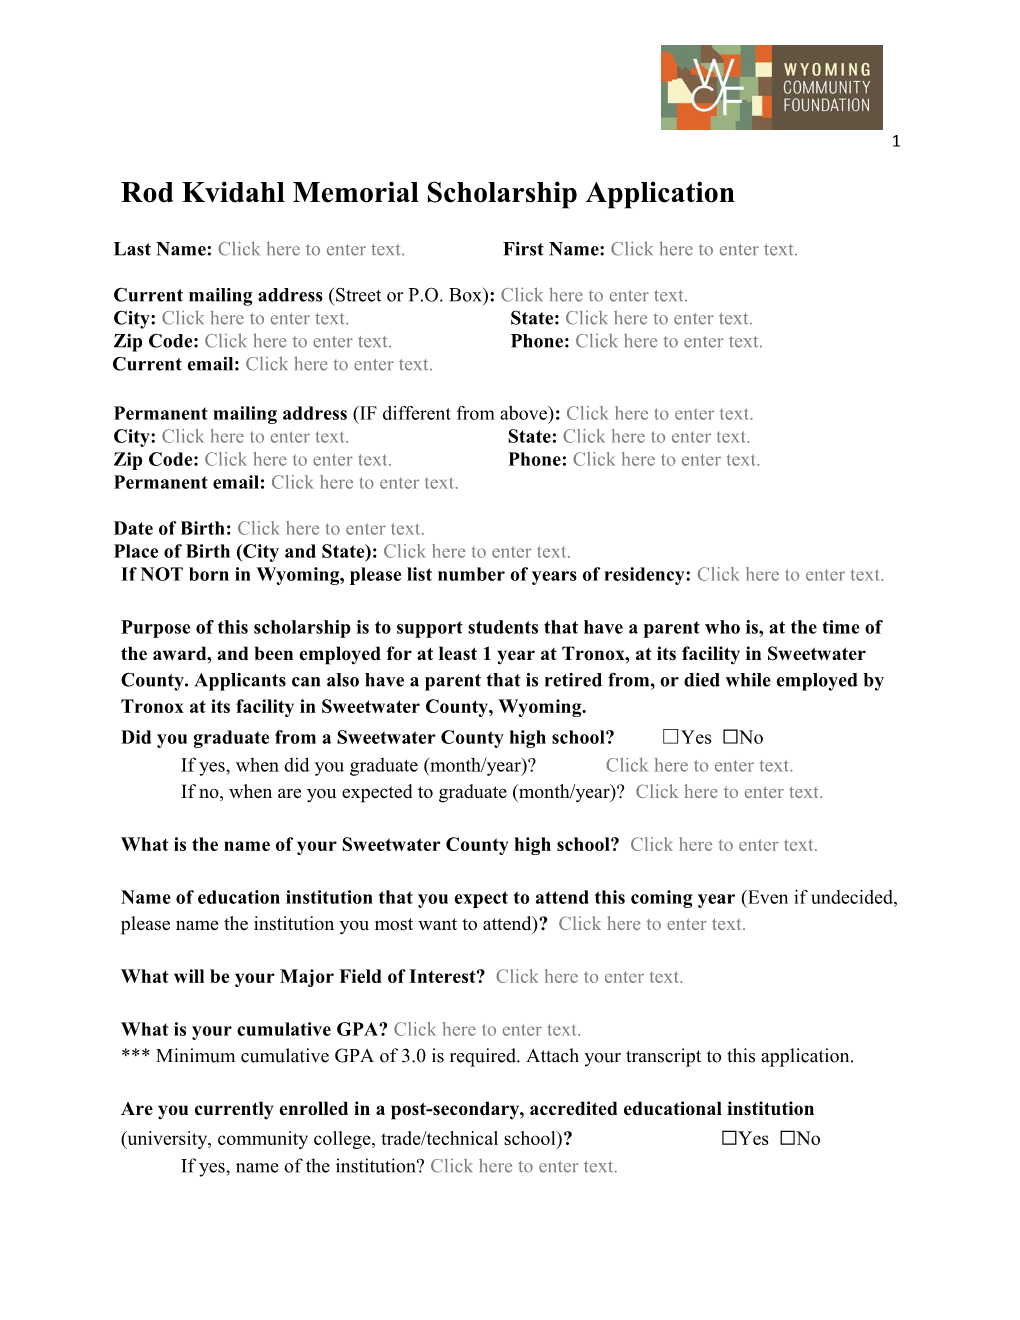 Rod Kvidahl Memorial Scholarship Application